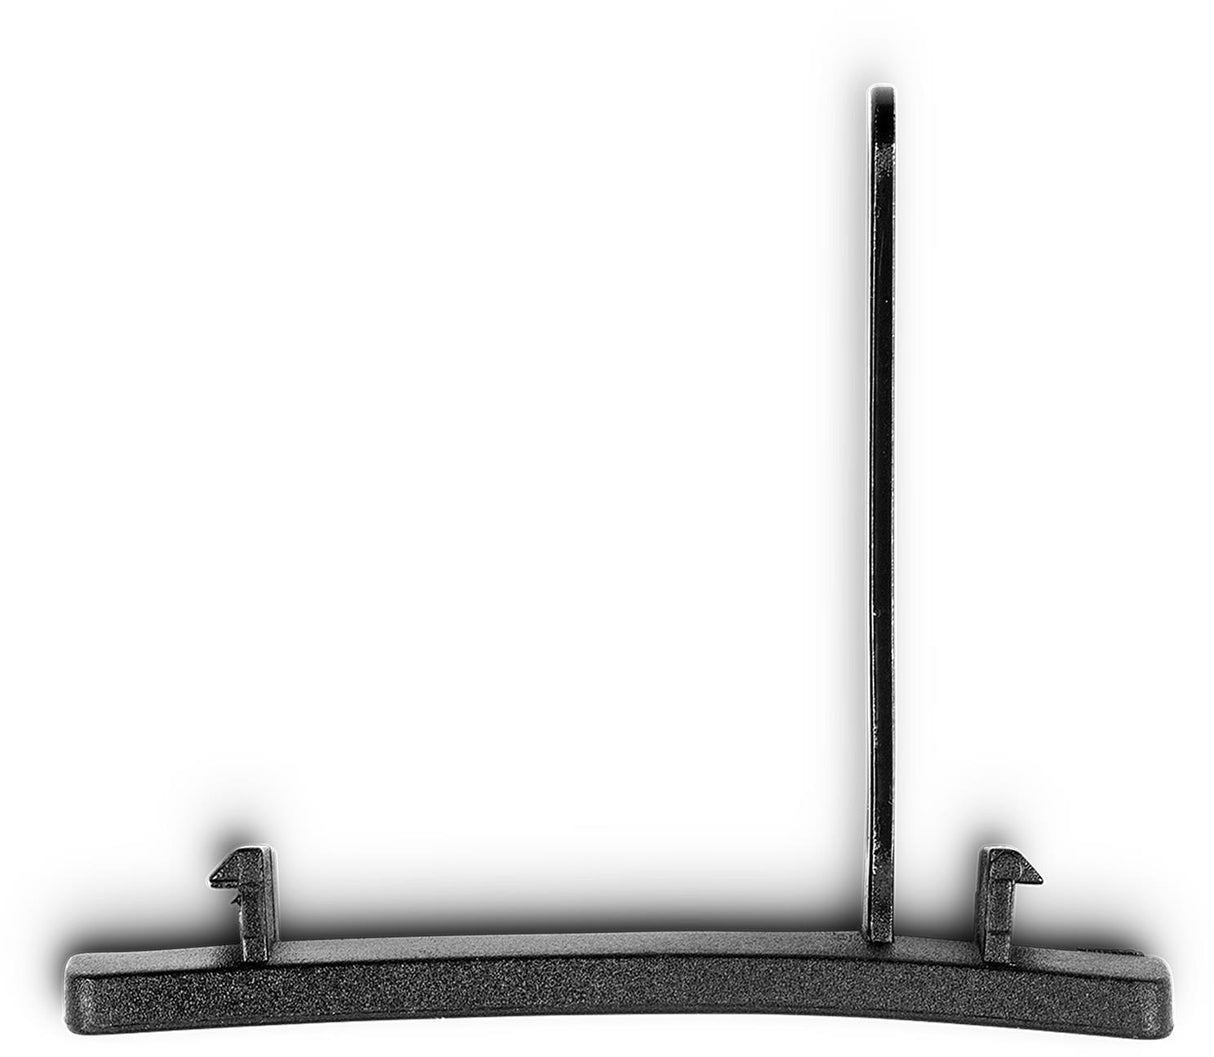 ACID vorkkroonadapter voor schroefbevestiging 47 mm 2.0